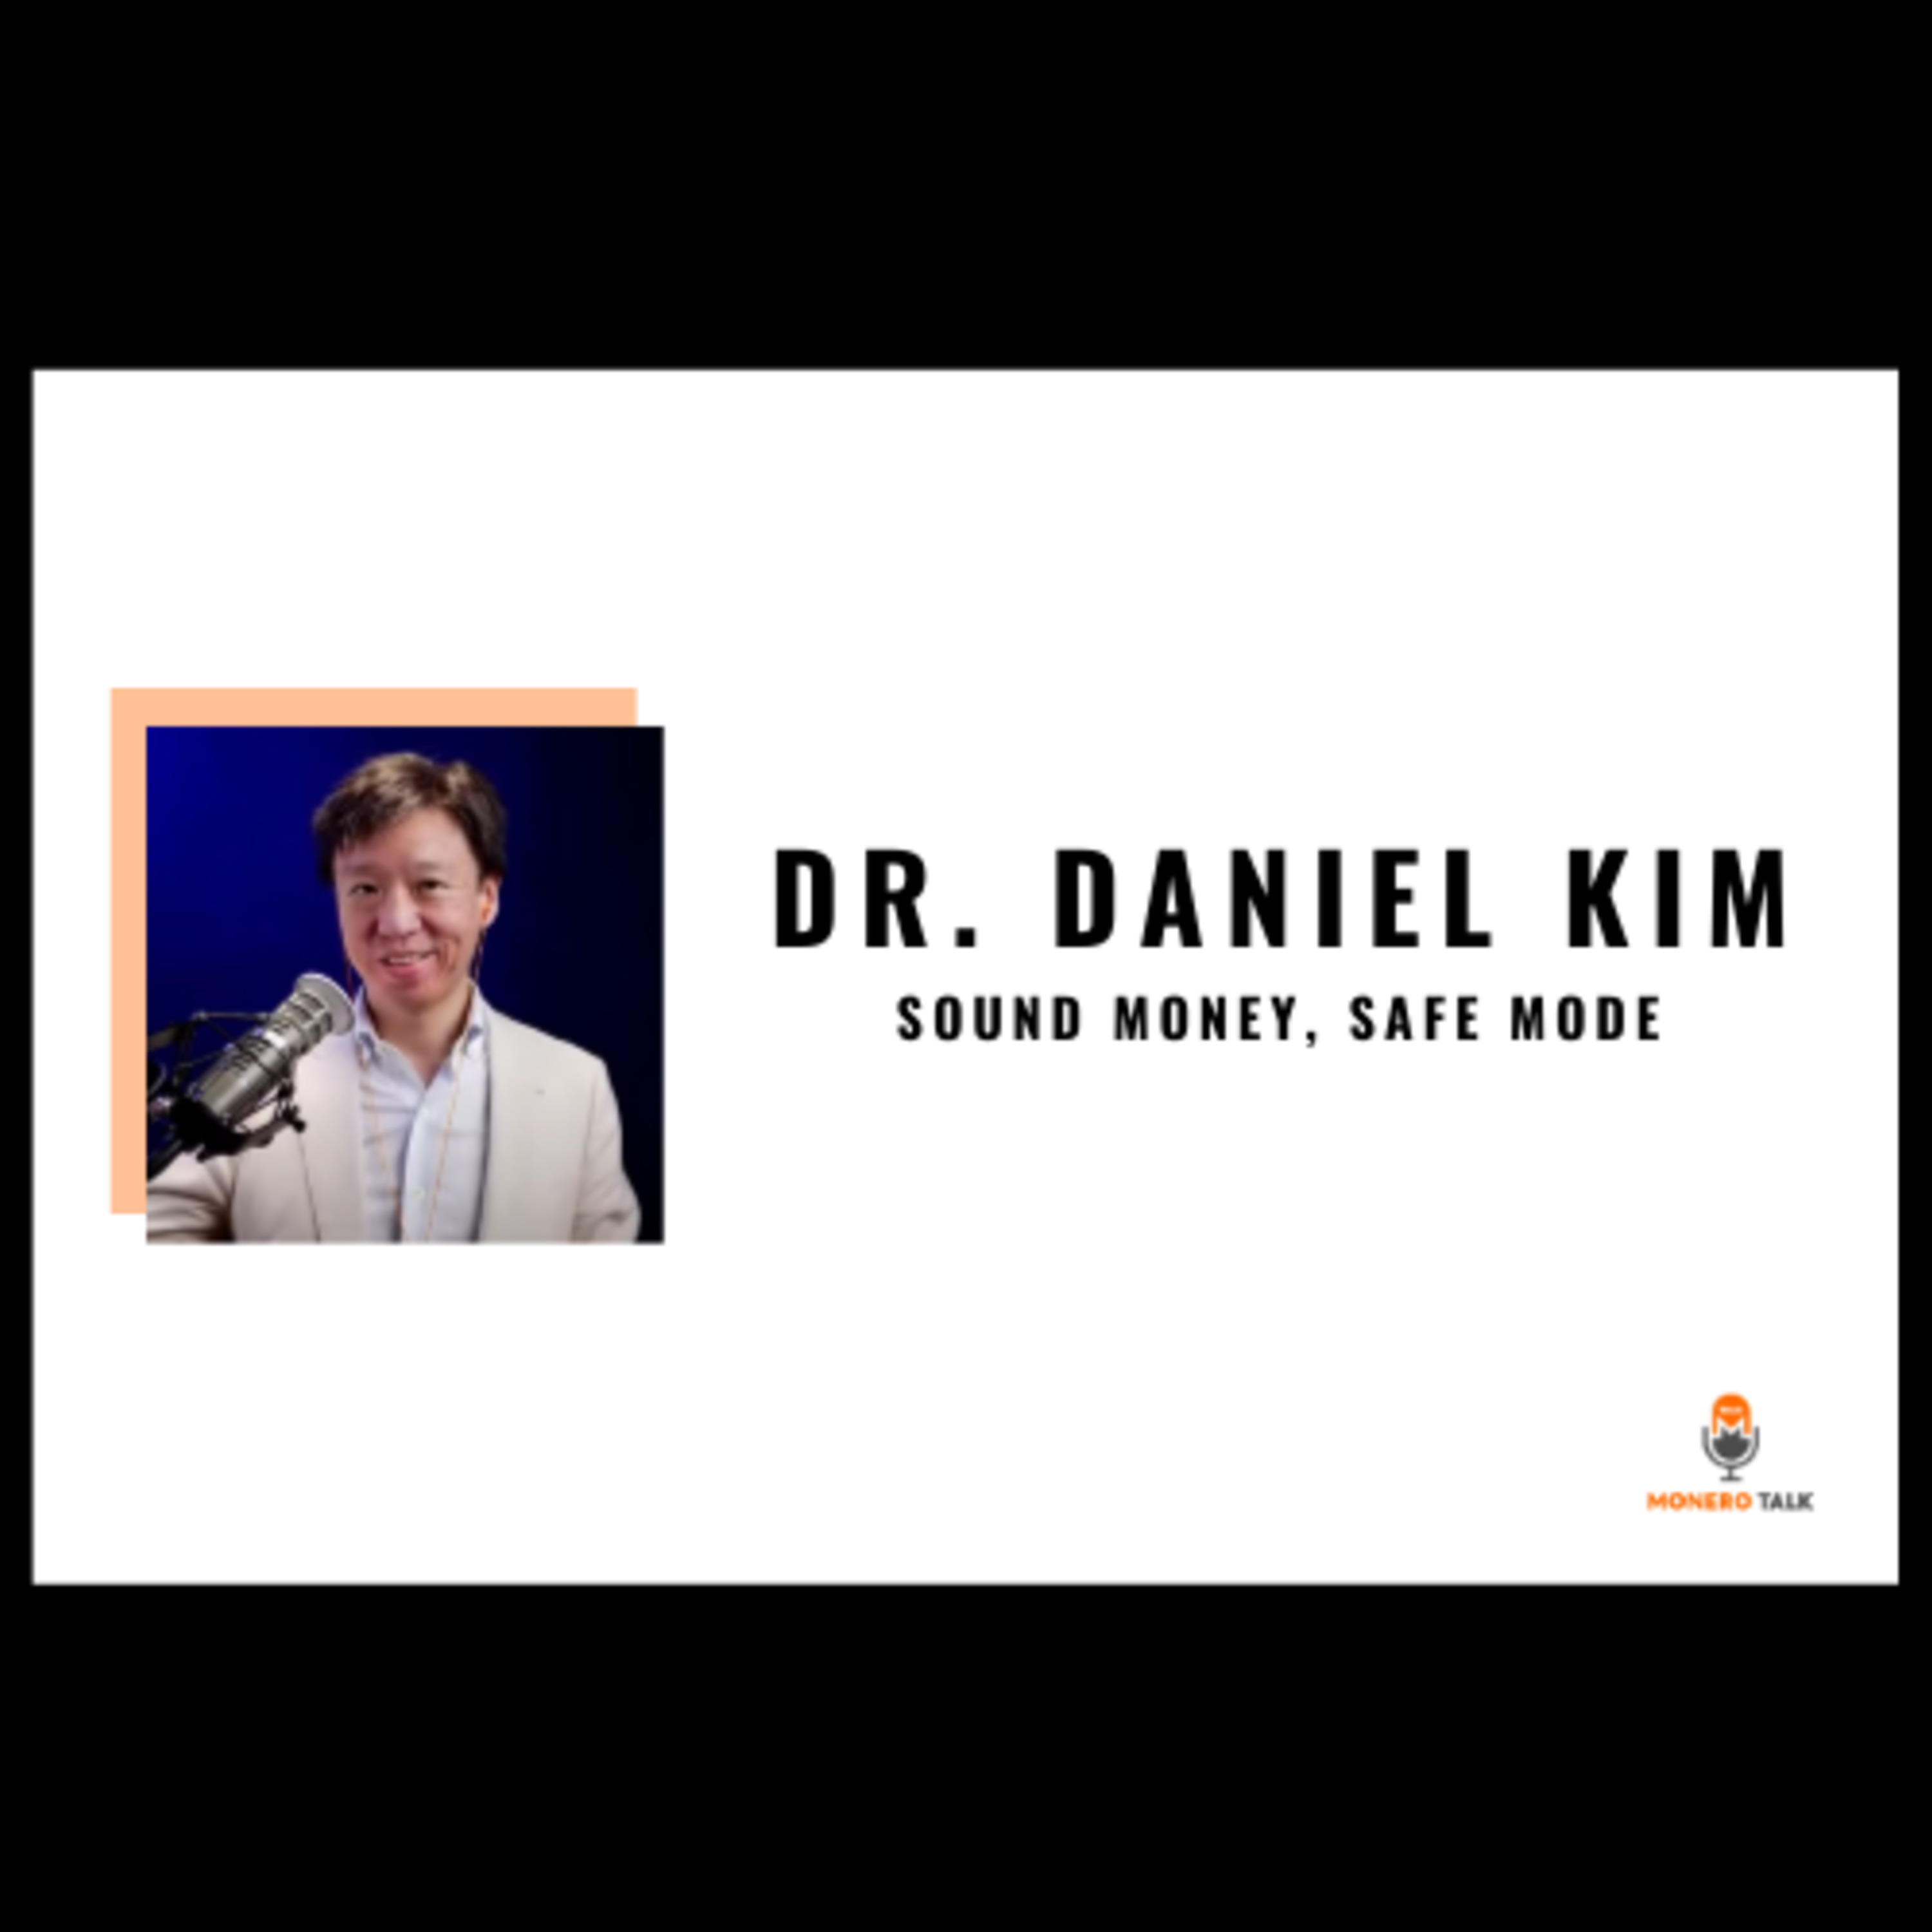 Dr. Daniel Kim: Sound Money, Safe Mode